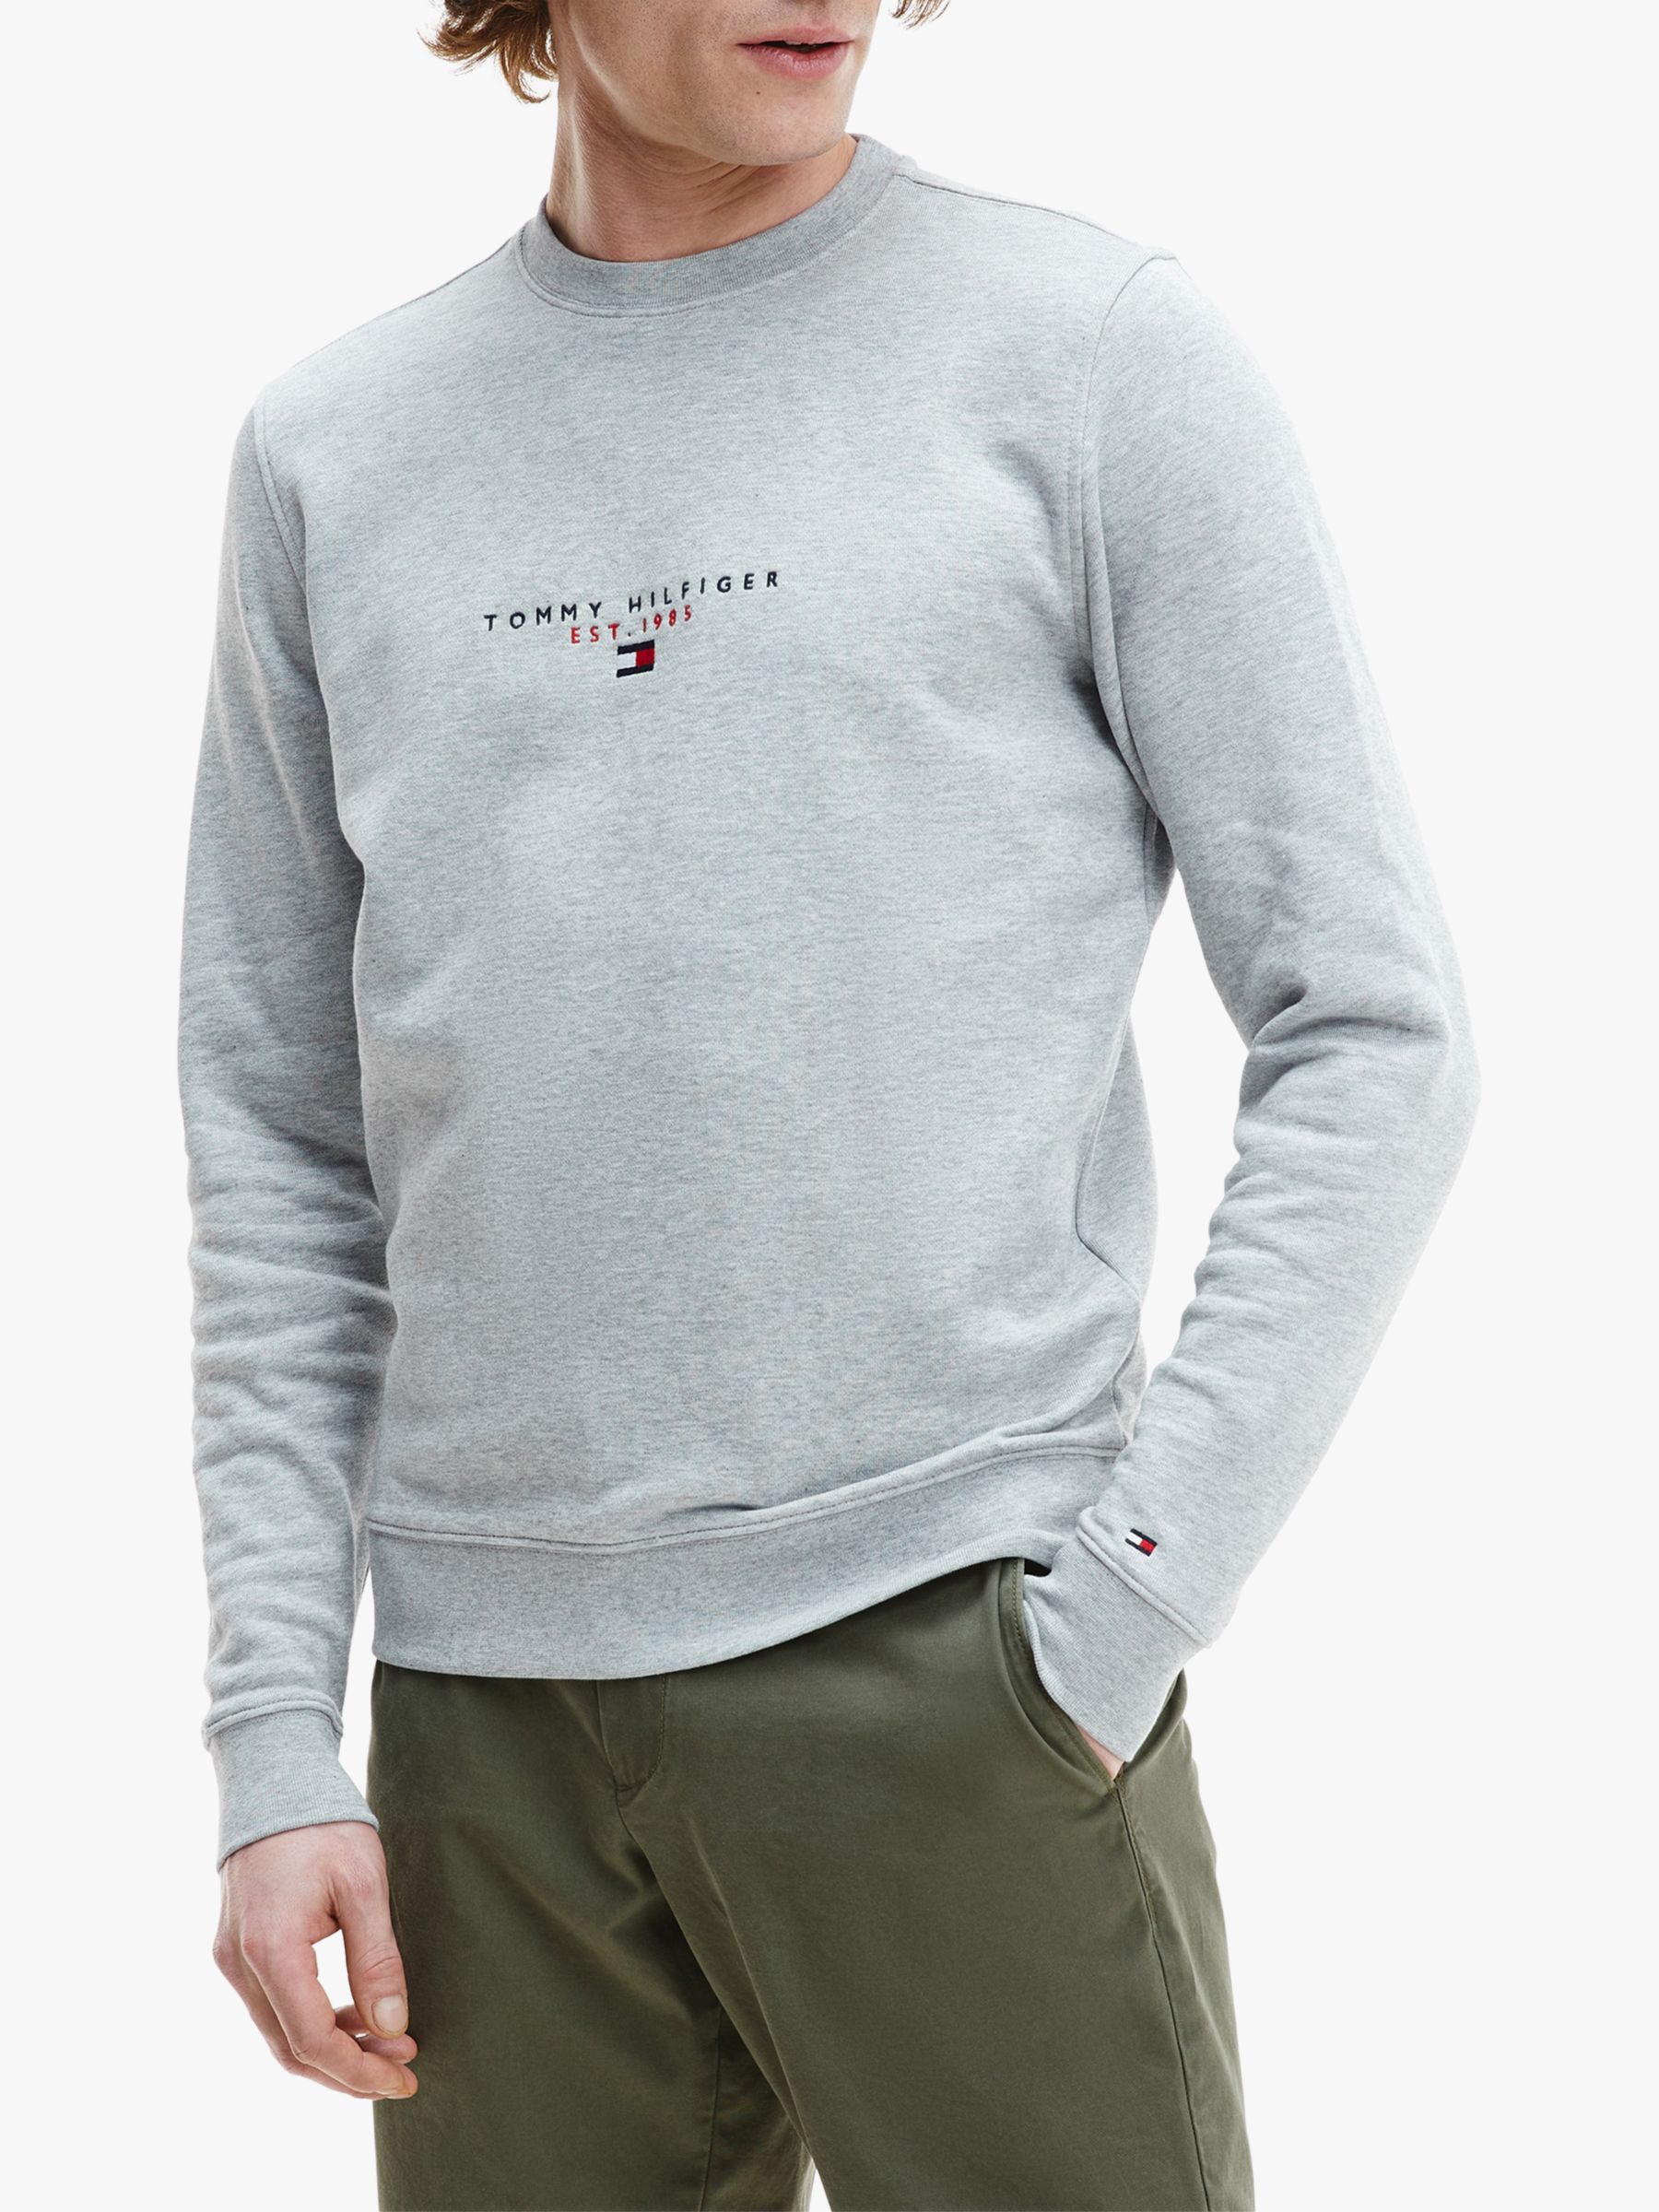 Tommy Hilfiger Essential Crew Neck Sweatshirt, Medium Grey Heather at ...